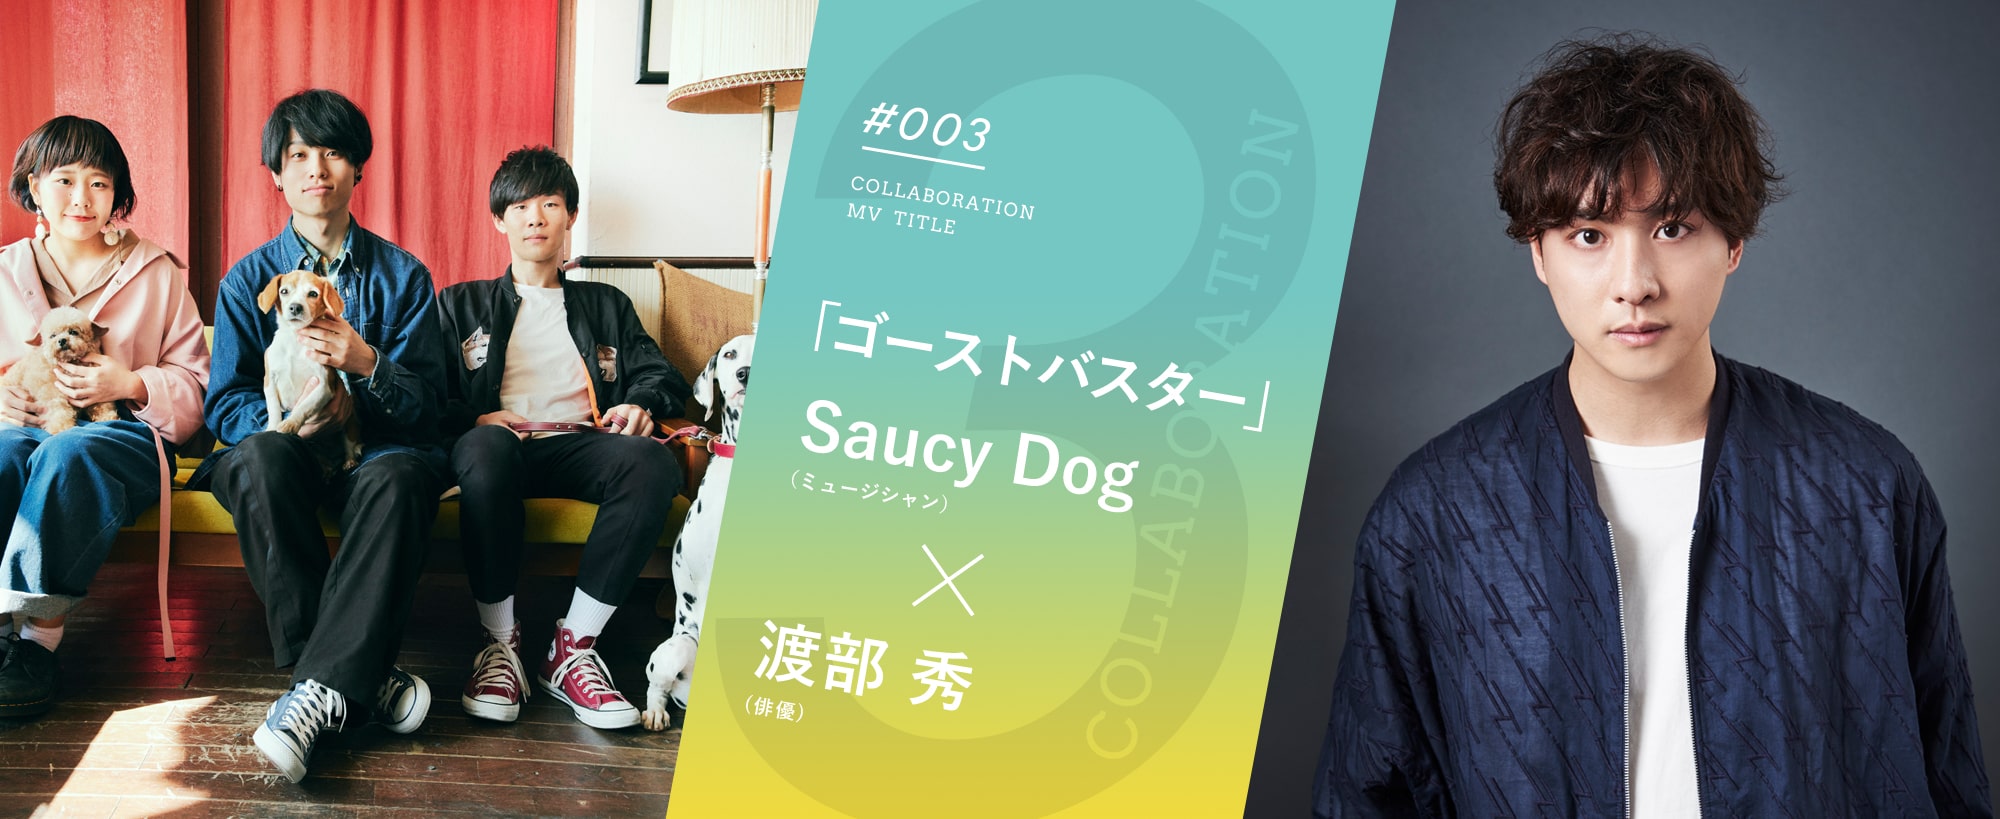 「ゴーストバスター」Saucy Dog （ミュージシャン）×渡部 秀 (俳優)